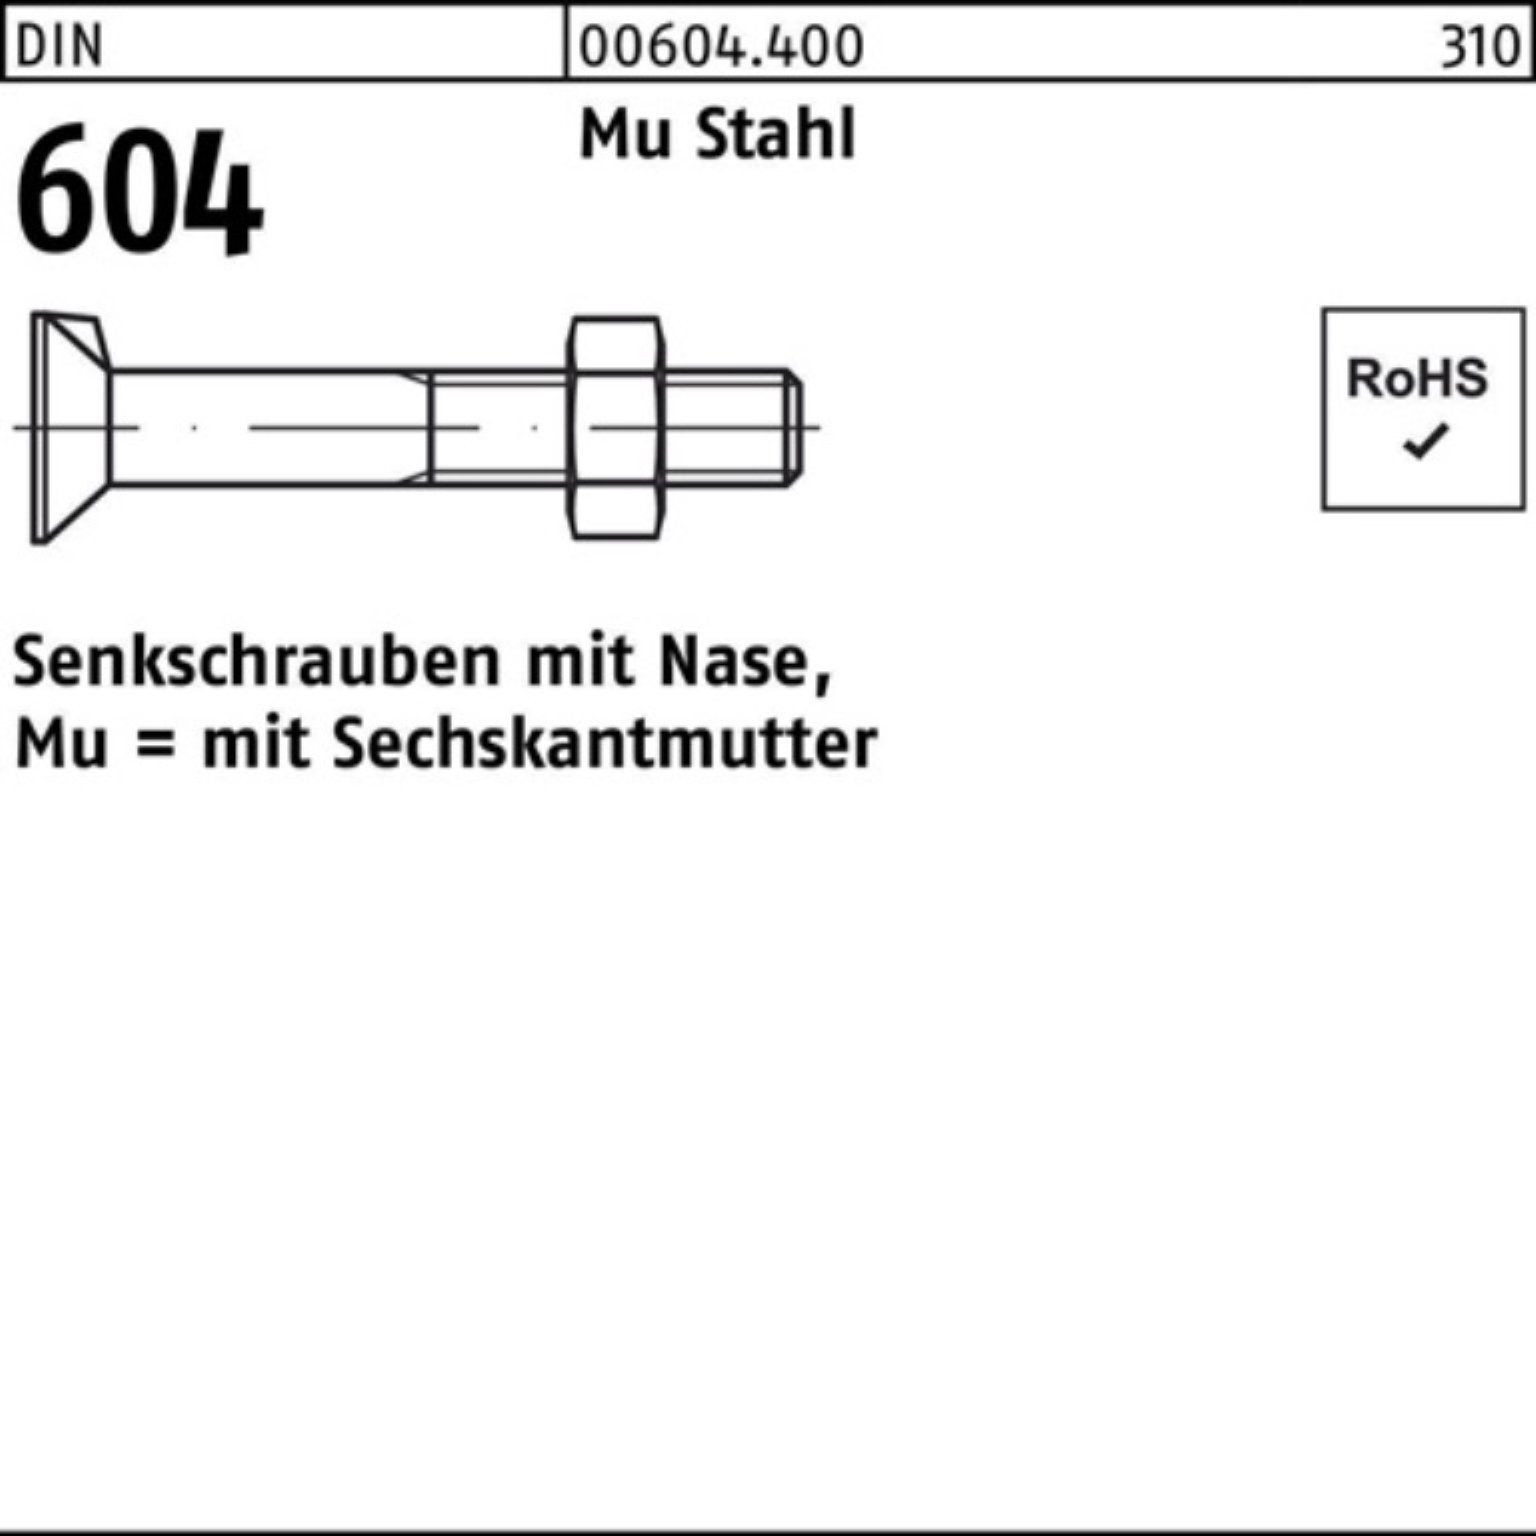 Reyher Senkschraube 100er Pack Senkschraube DIN 604 Nase/6-ktmutter M20x 70 Mu Stahl 4.6 2